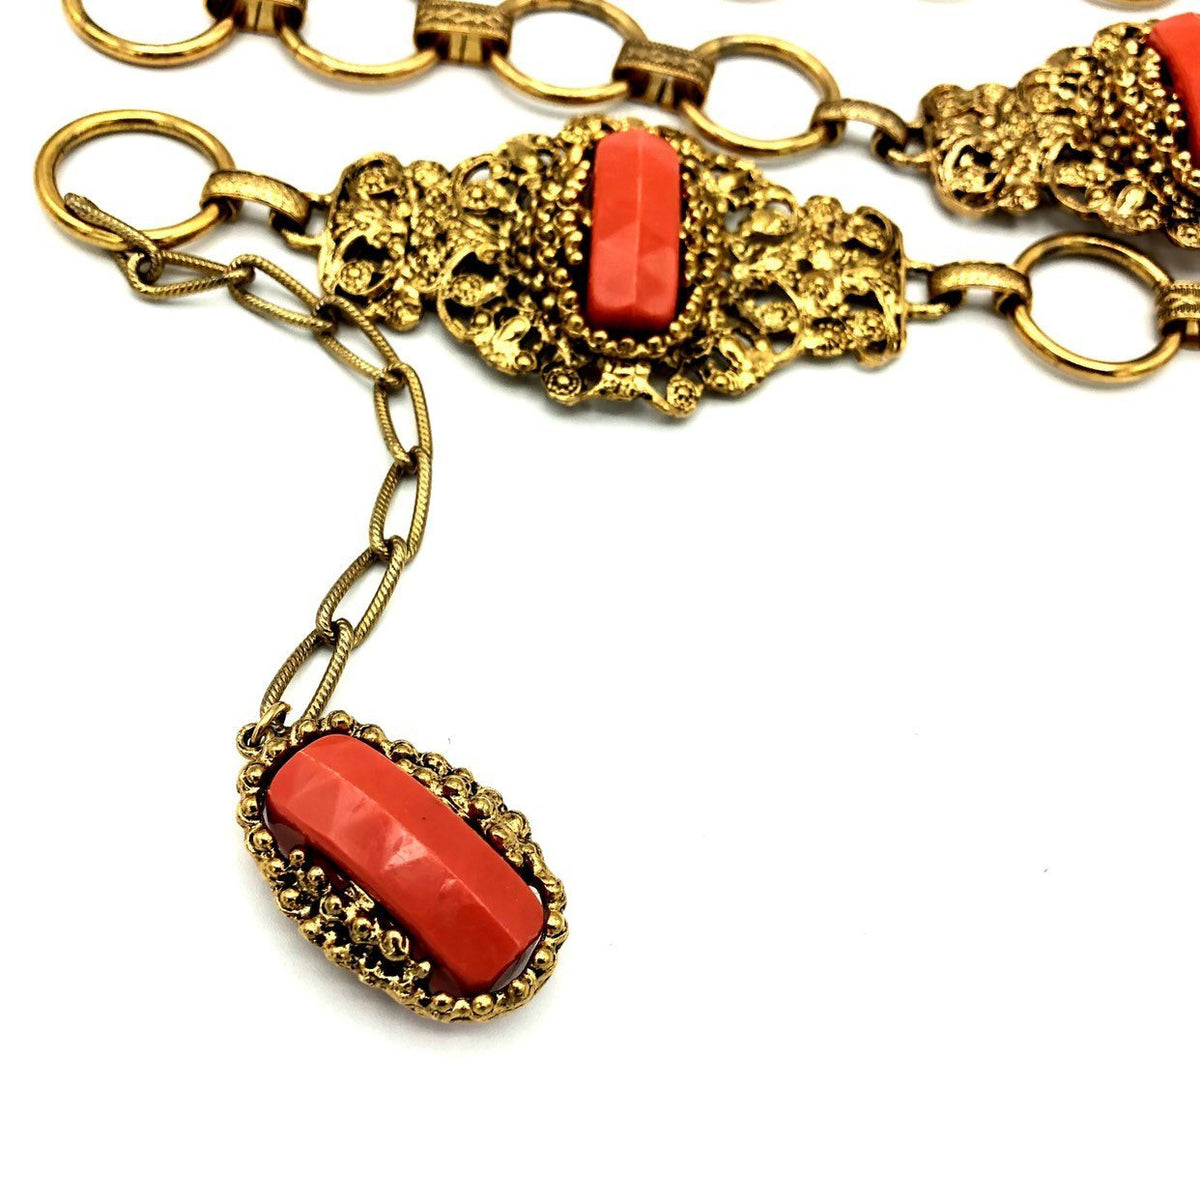 Hollycraft Victorian Revival Coral Belt Gold Vintage Belt - 24 Wishes Vintage Jewelry